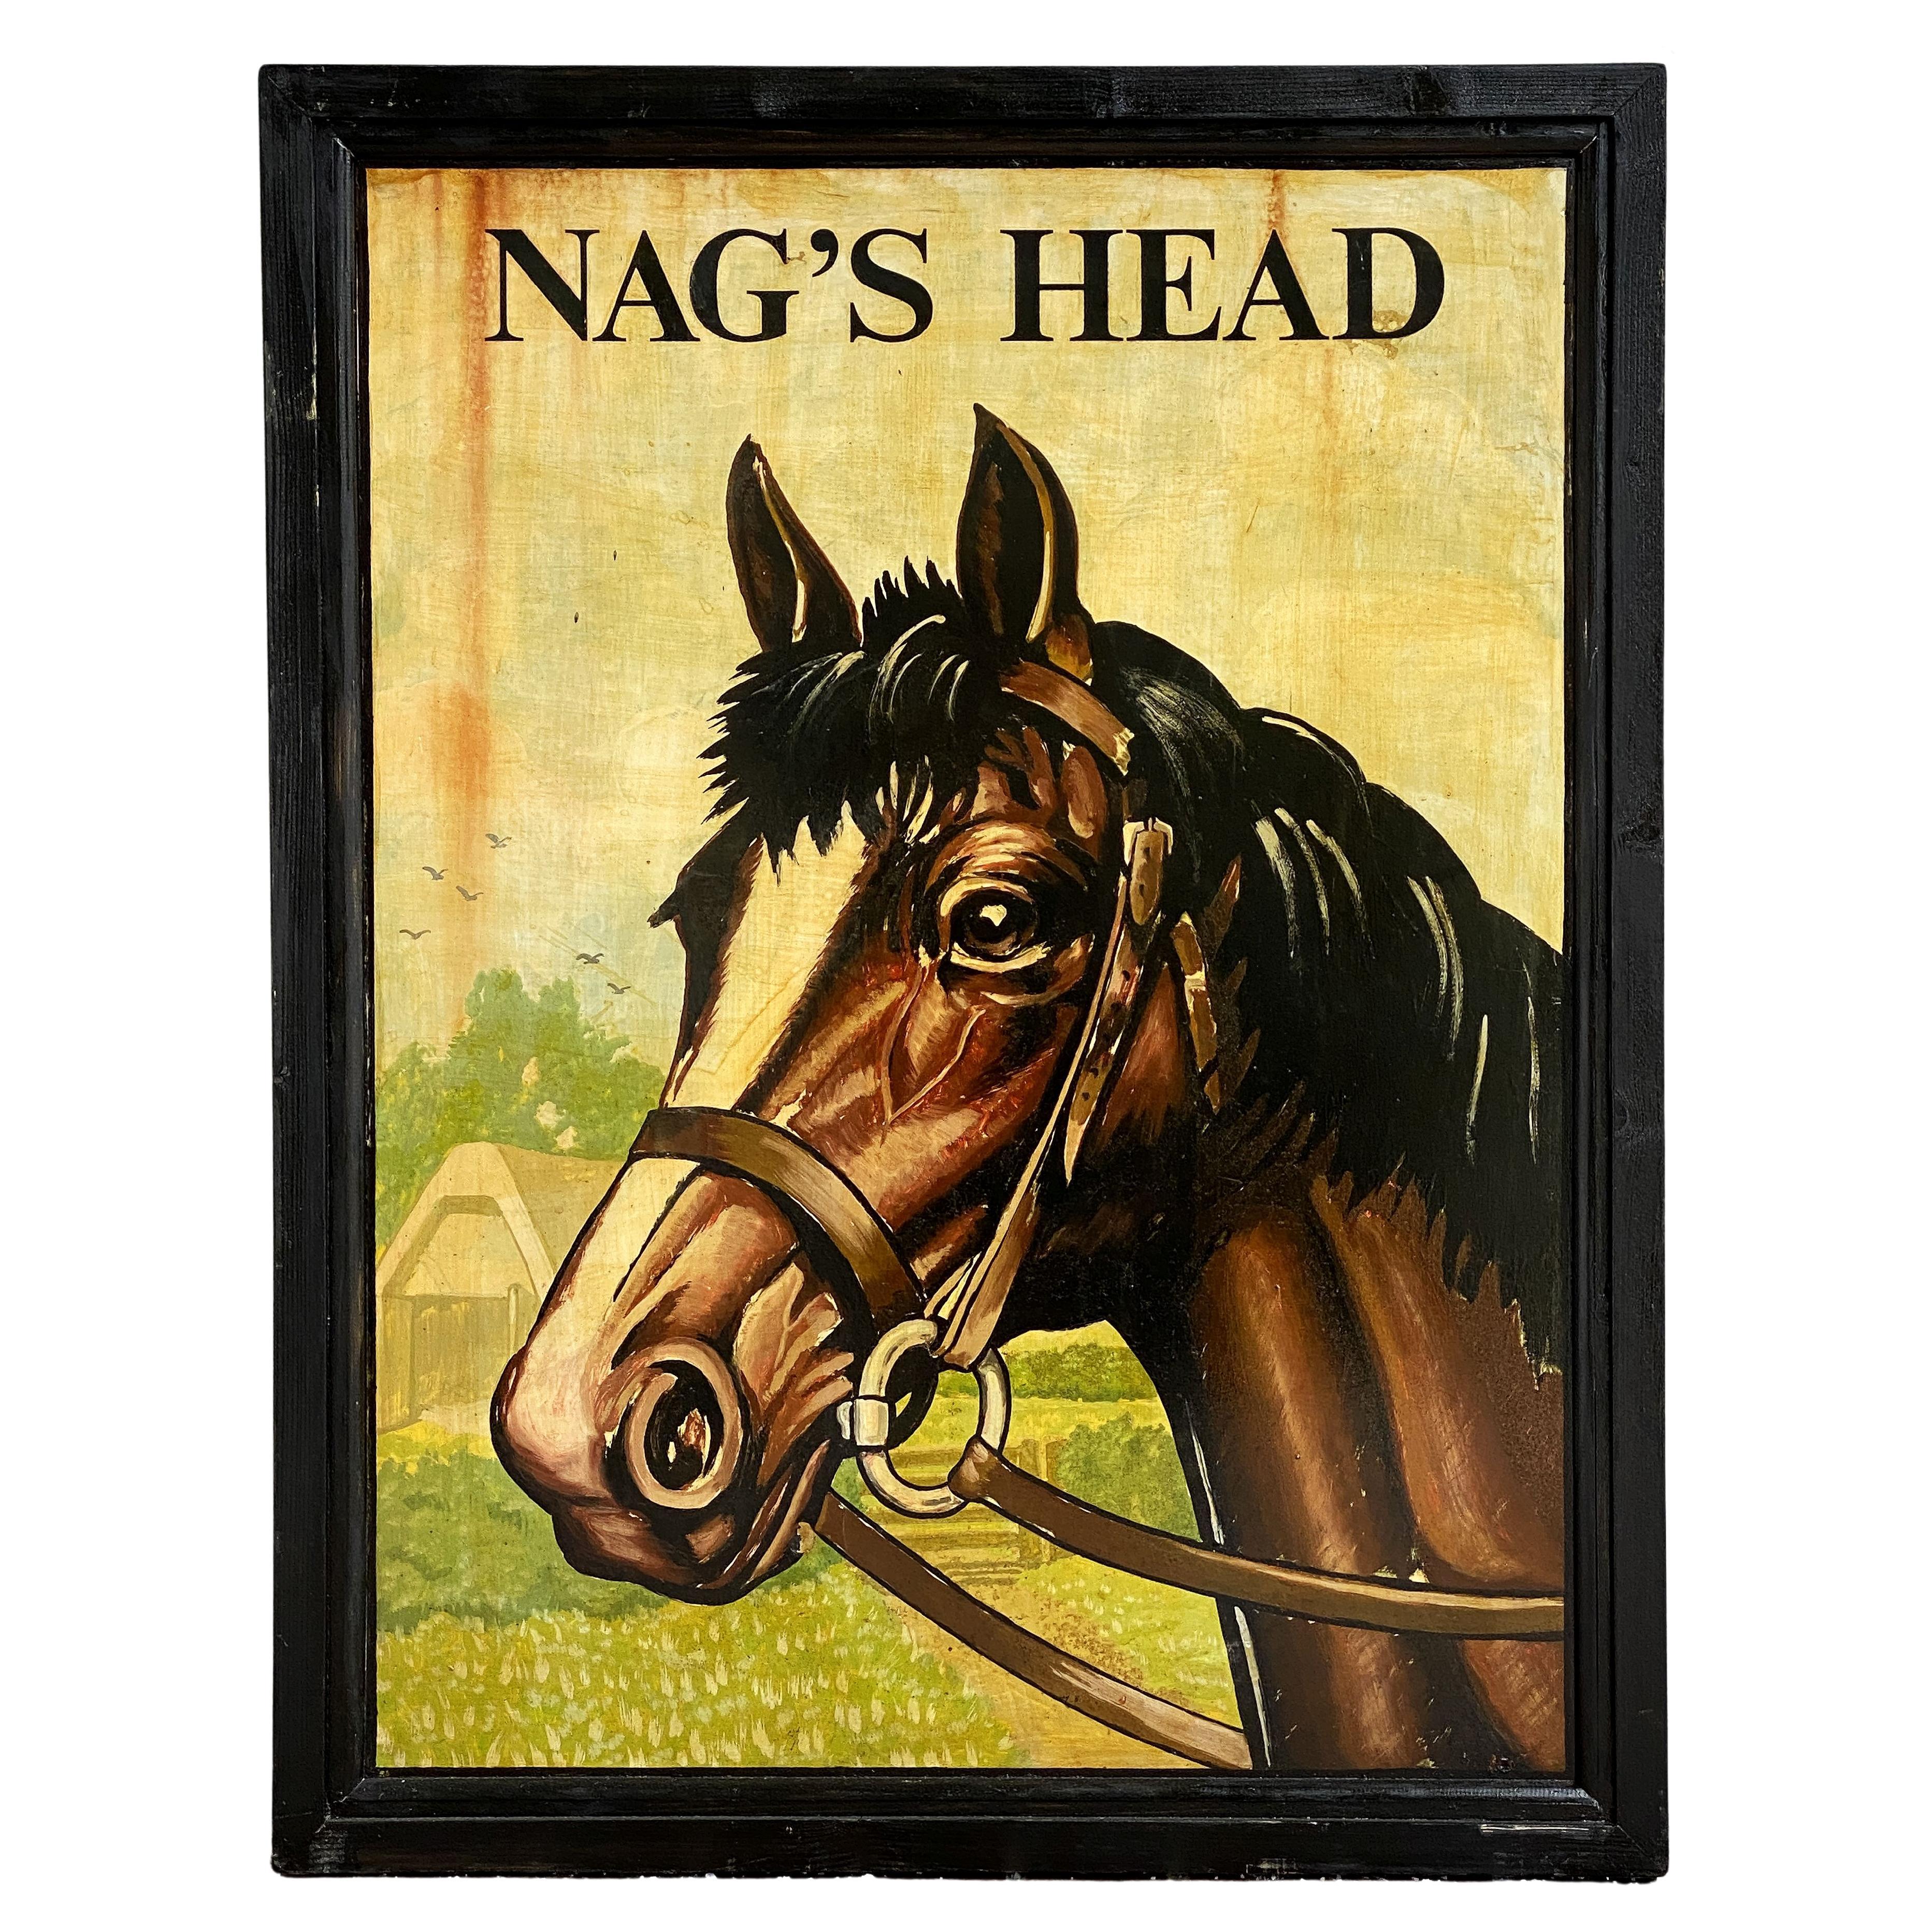 Enseigne de pub anglaise, « Nag's Head »